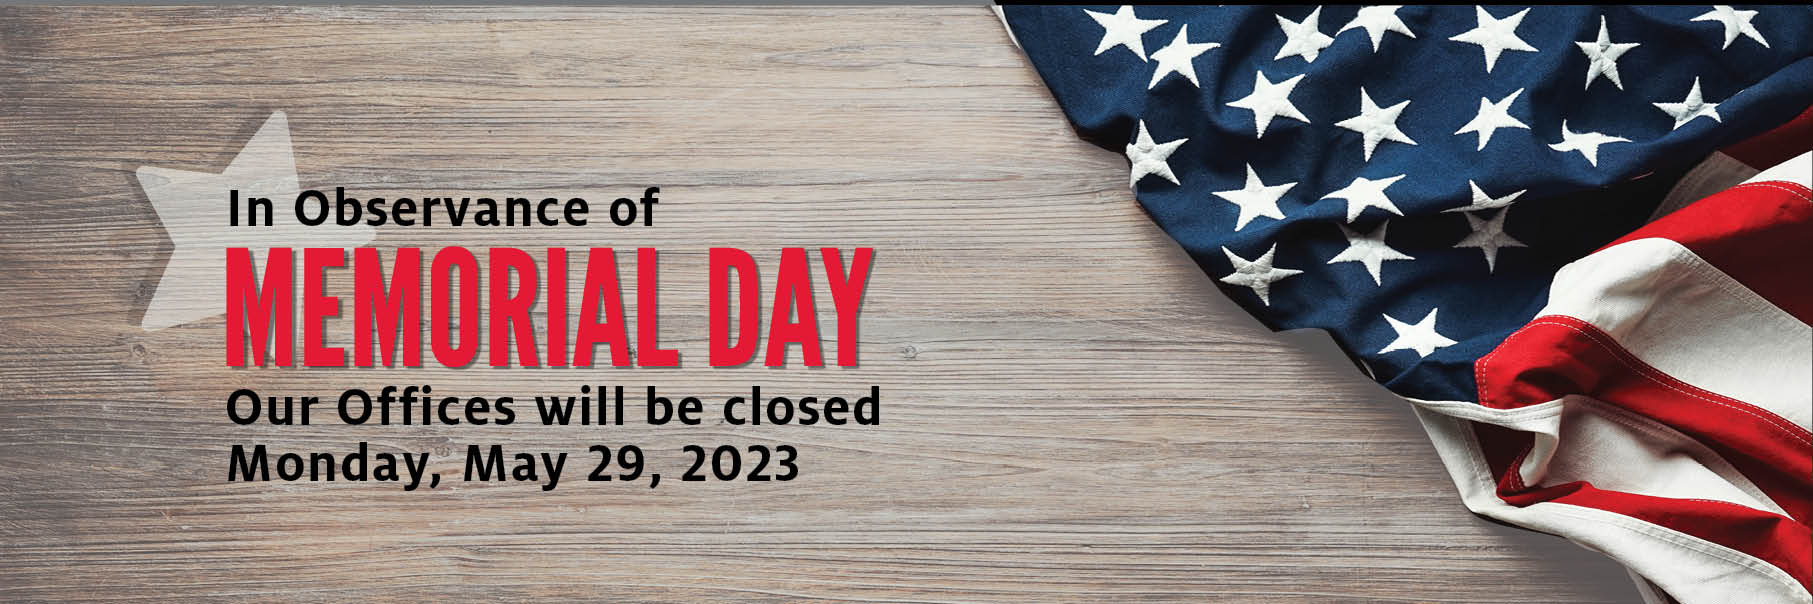 closed memorial day